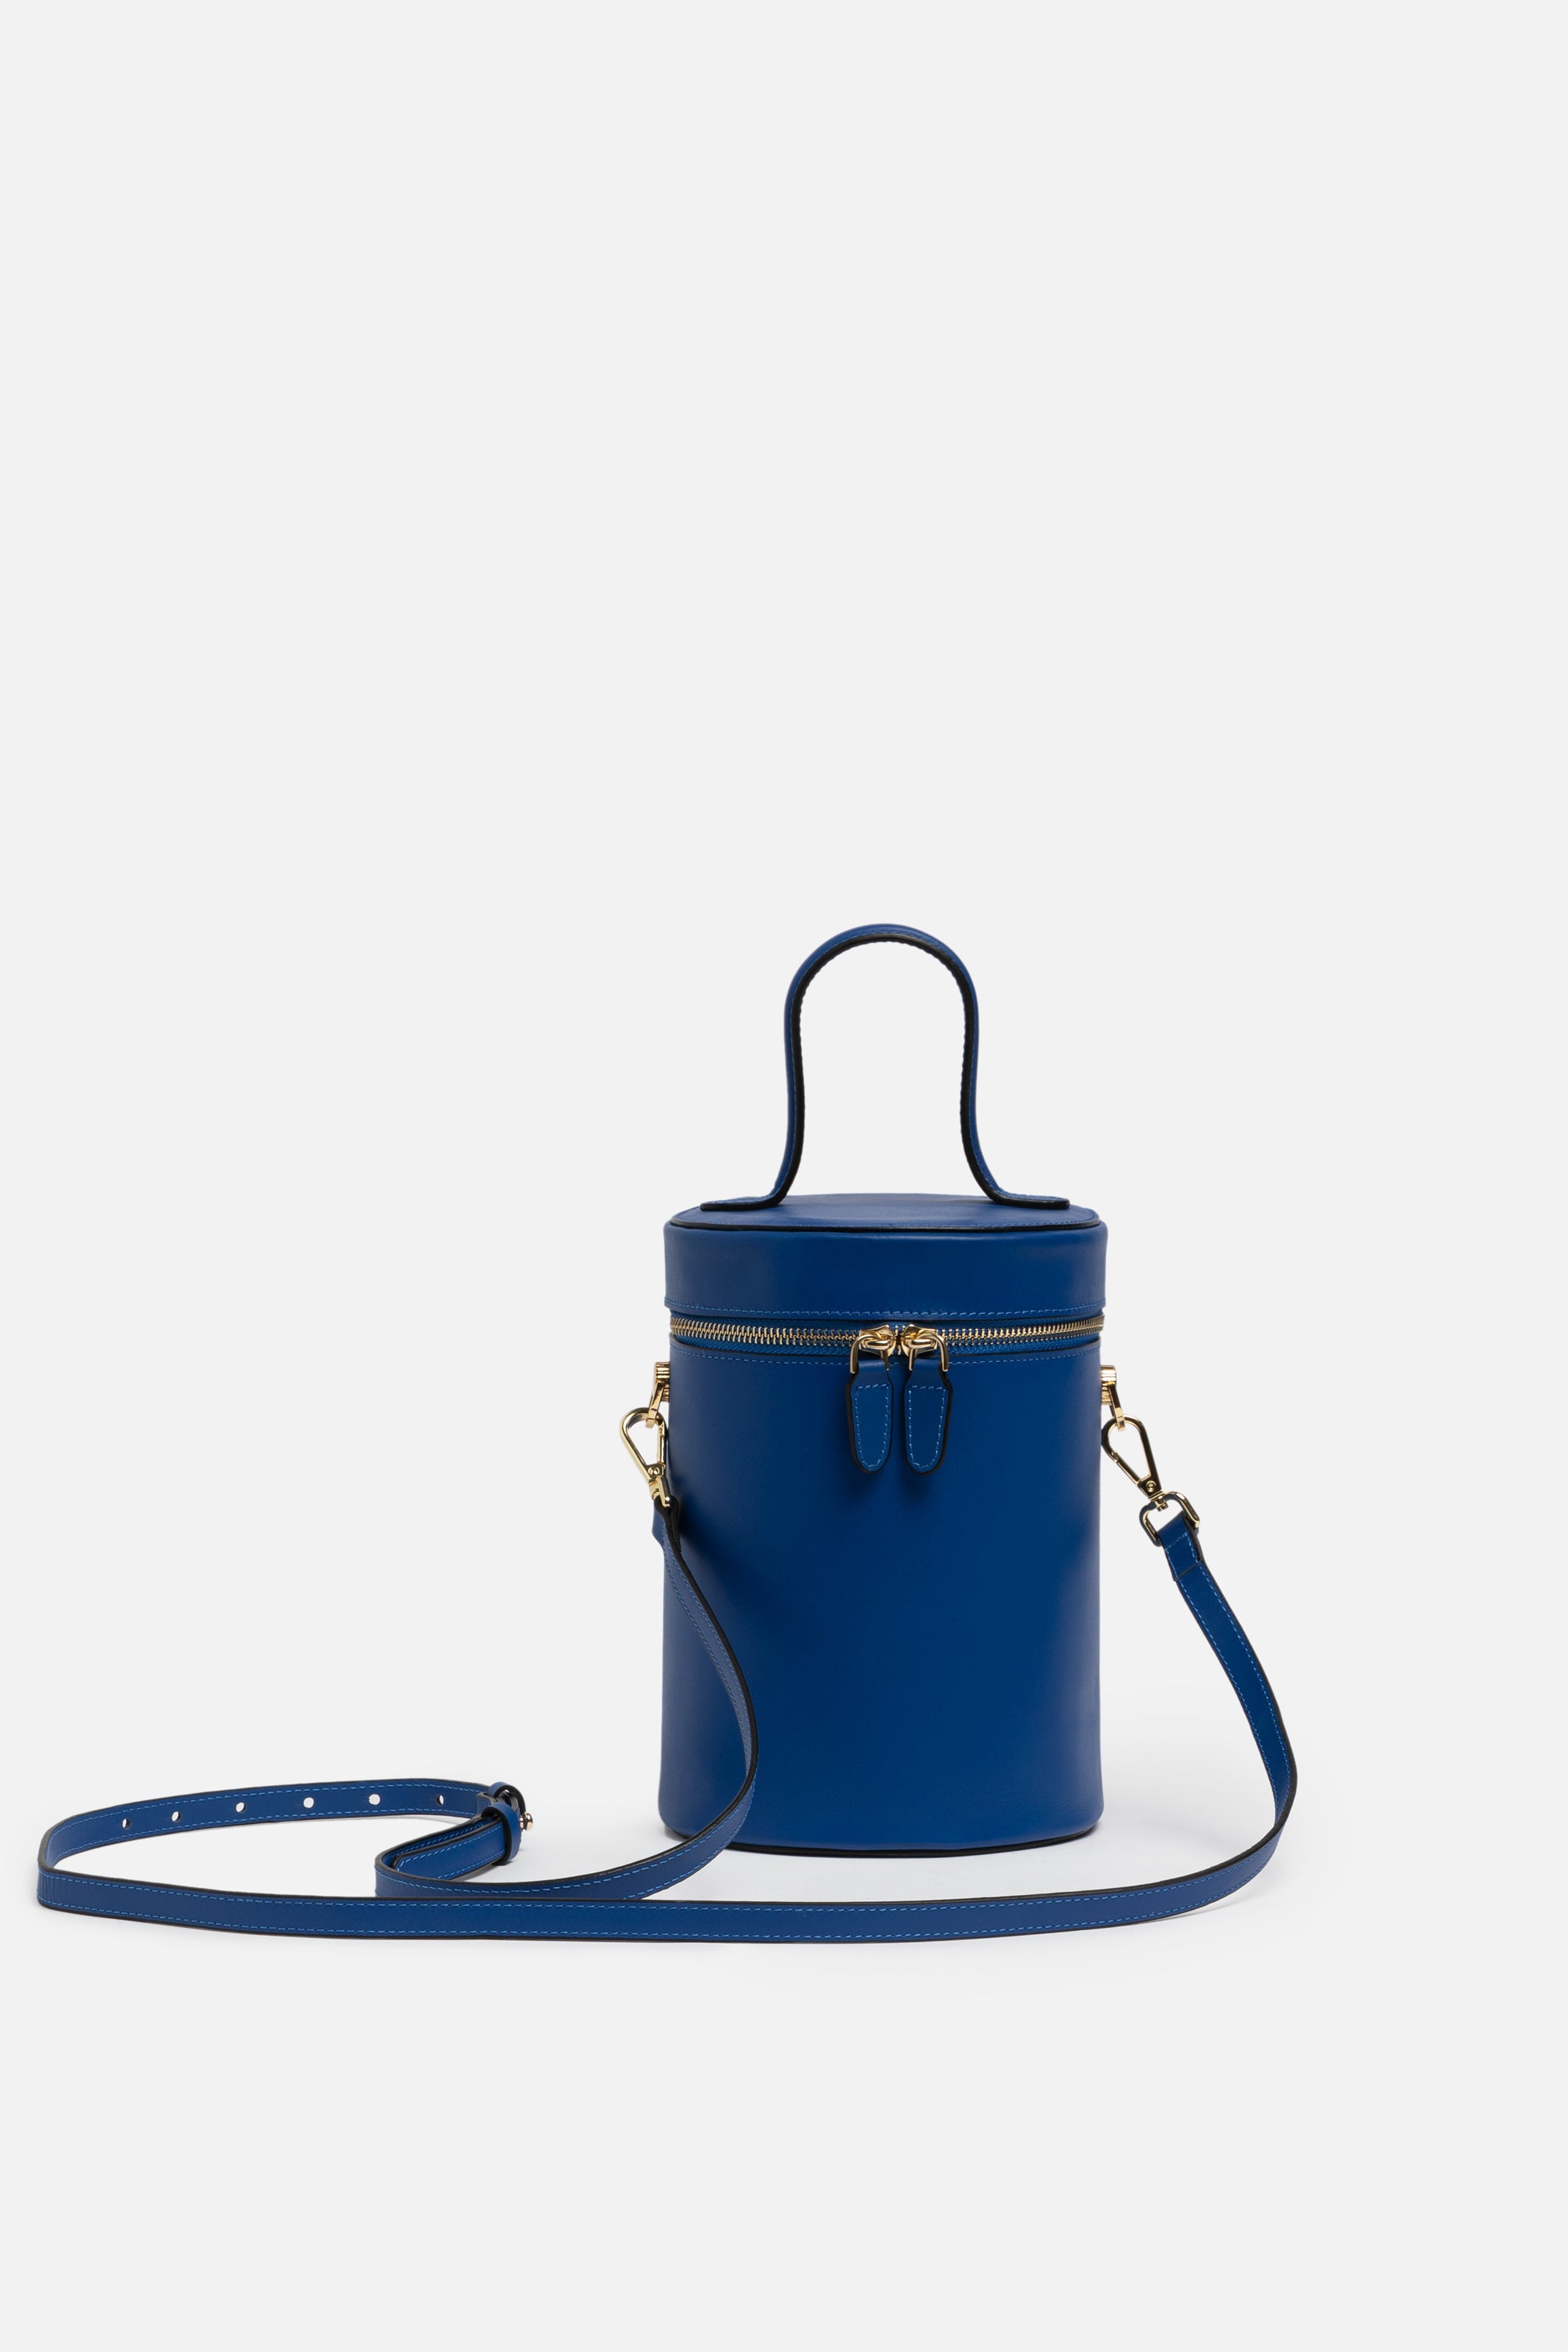 NOLA Bucket Leather Bag in Regal Royal Blue | Silver & Riley